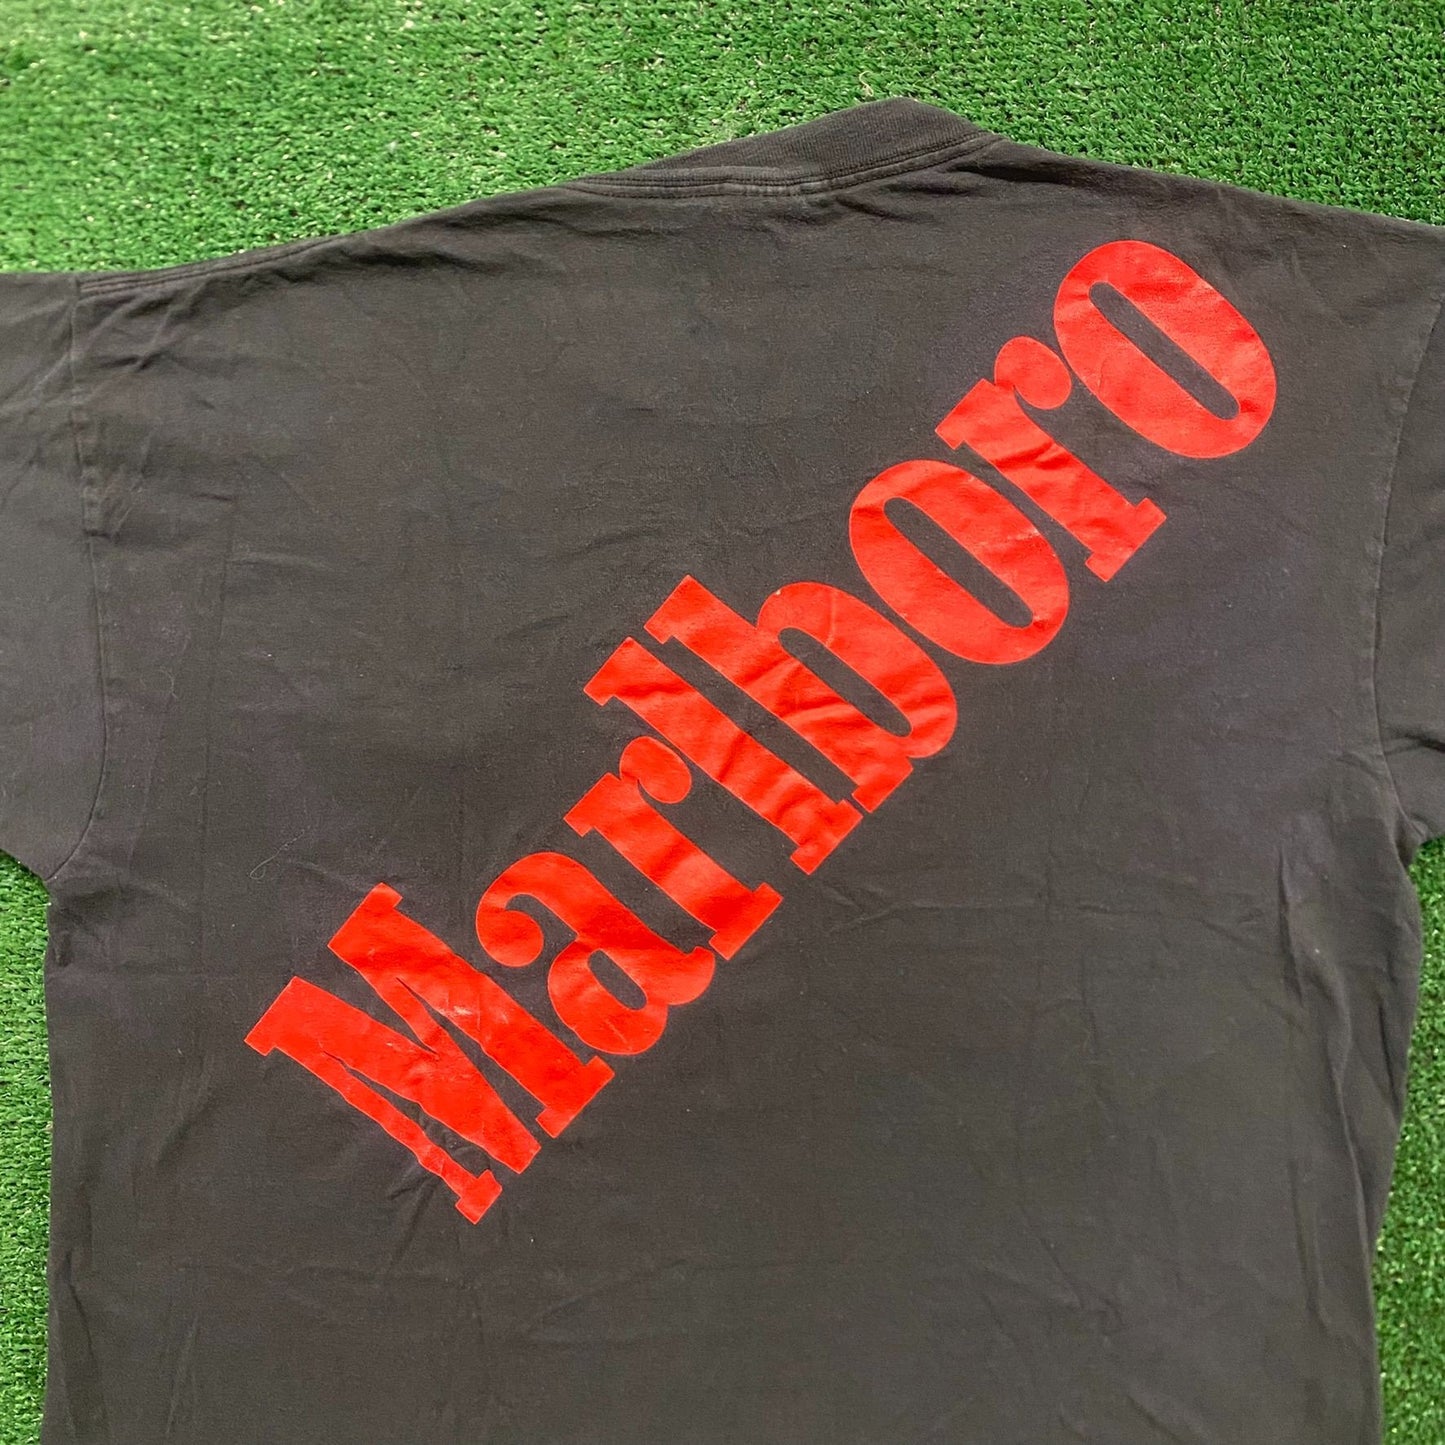 Marlboro Vintage 90s Grunge Punk T-Shirt